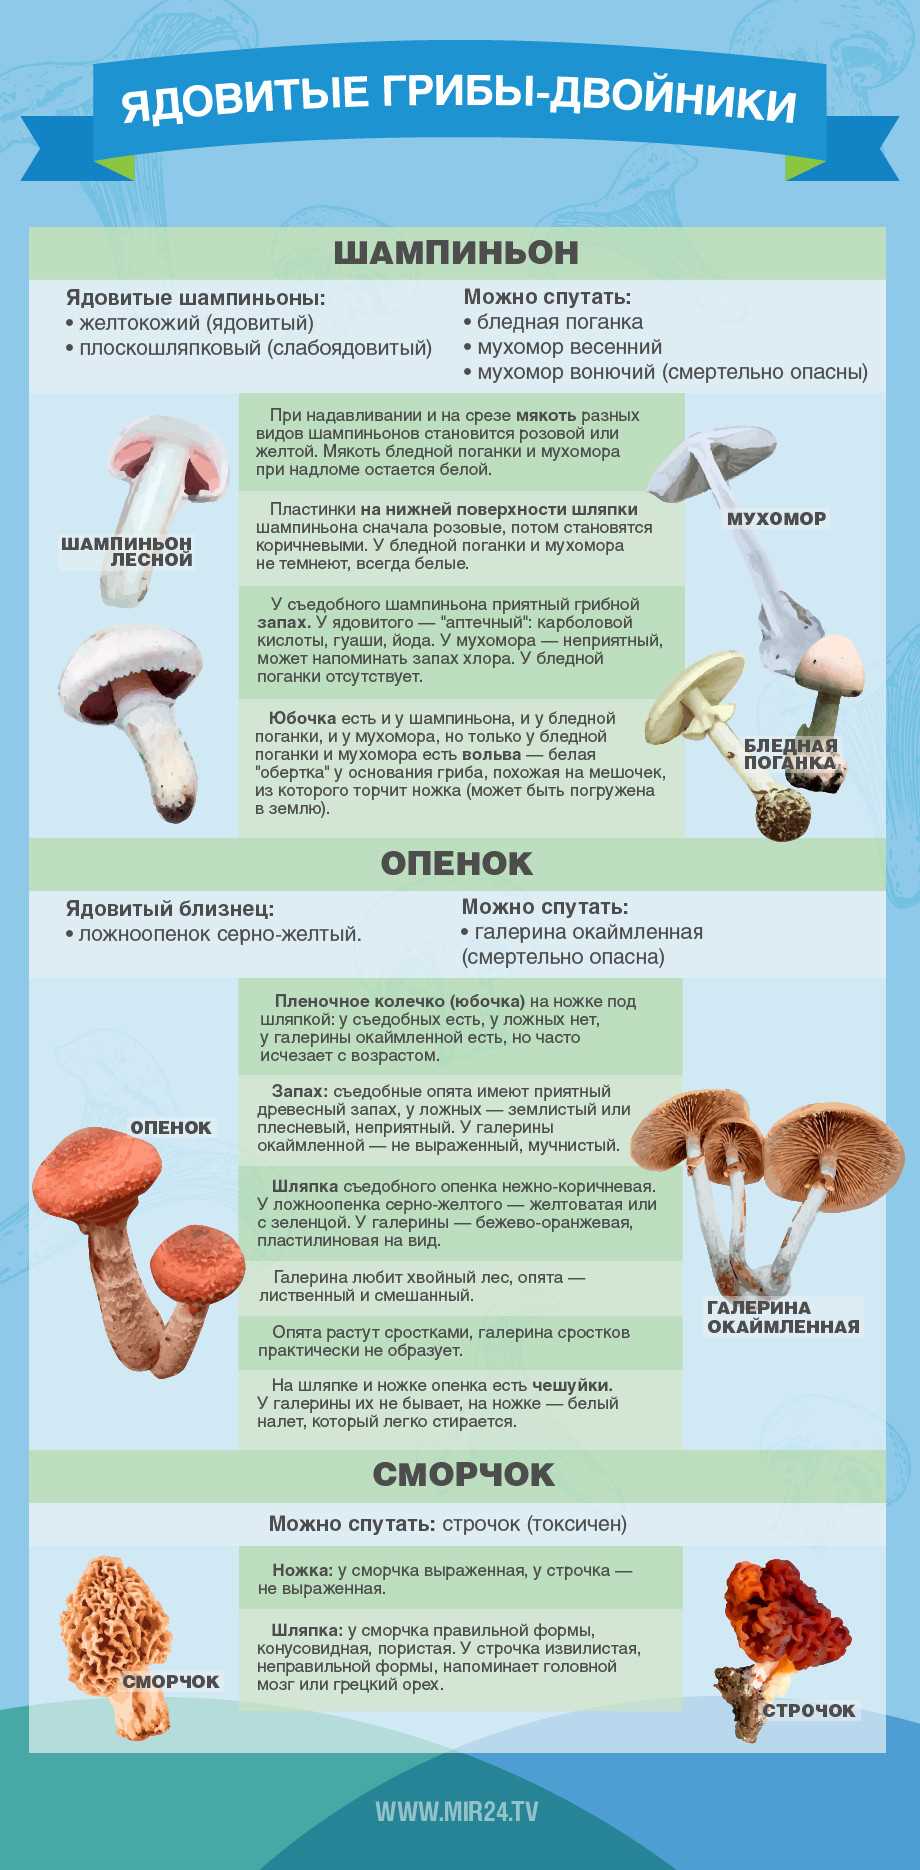 Рассказываем, как отличить полезные грибы от ядовитых и почему некоторым может стать плохо даже от съедобных грибов